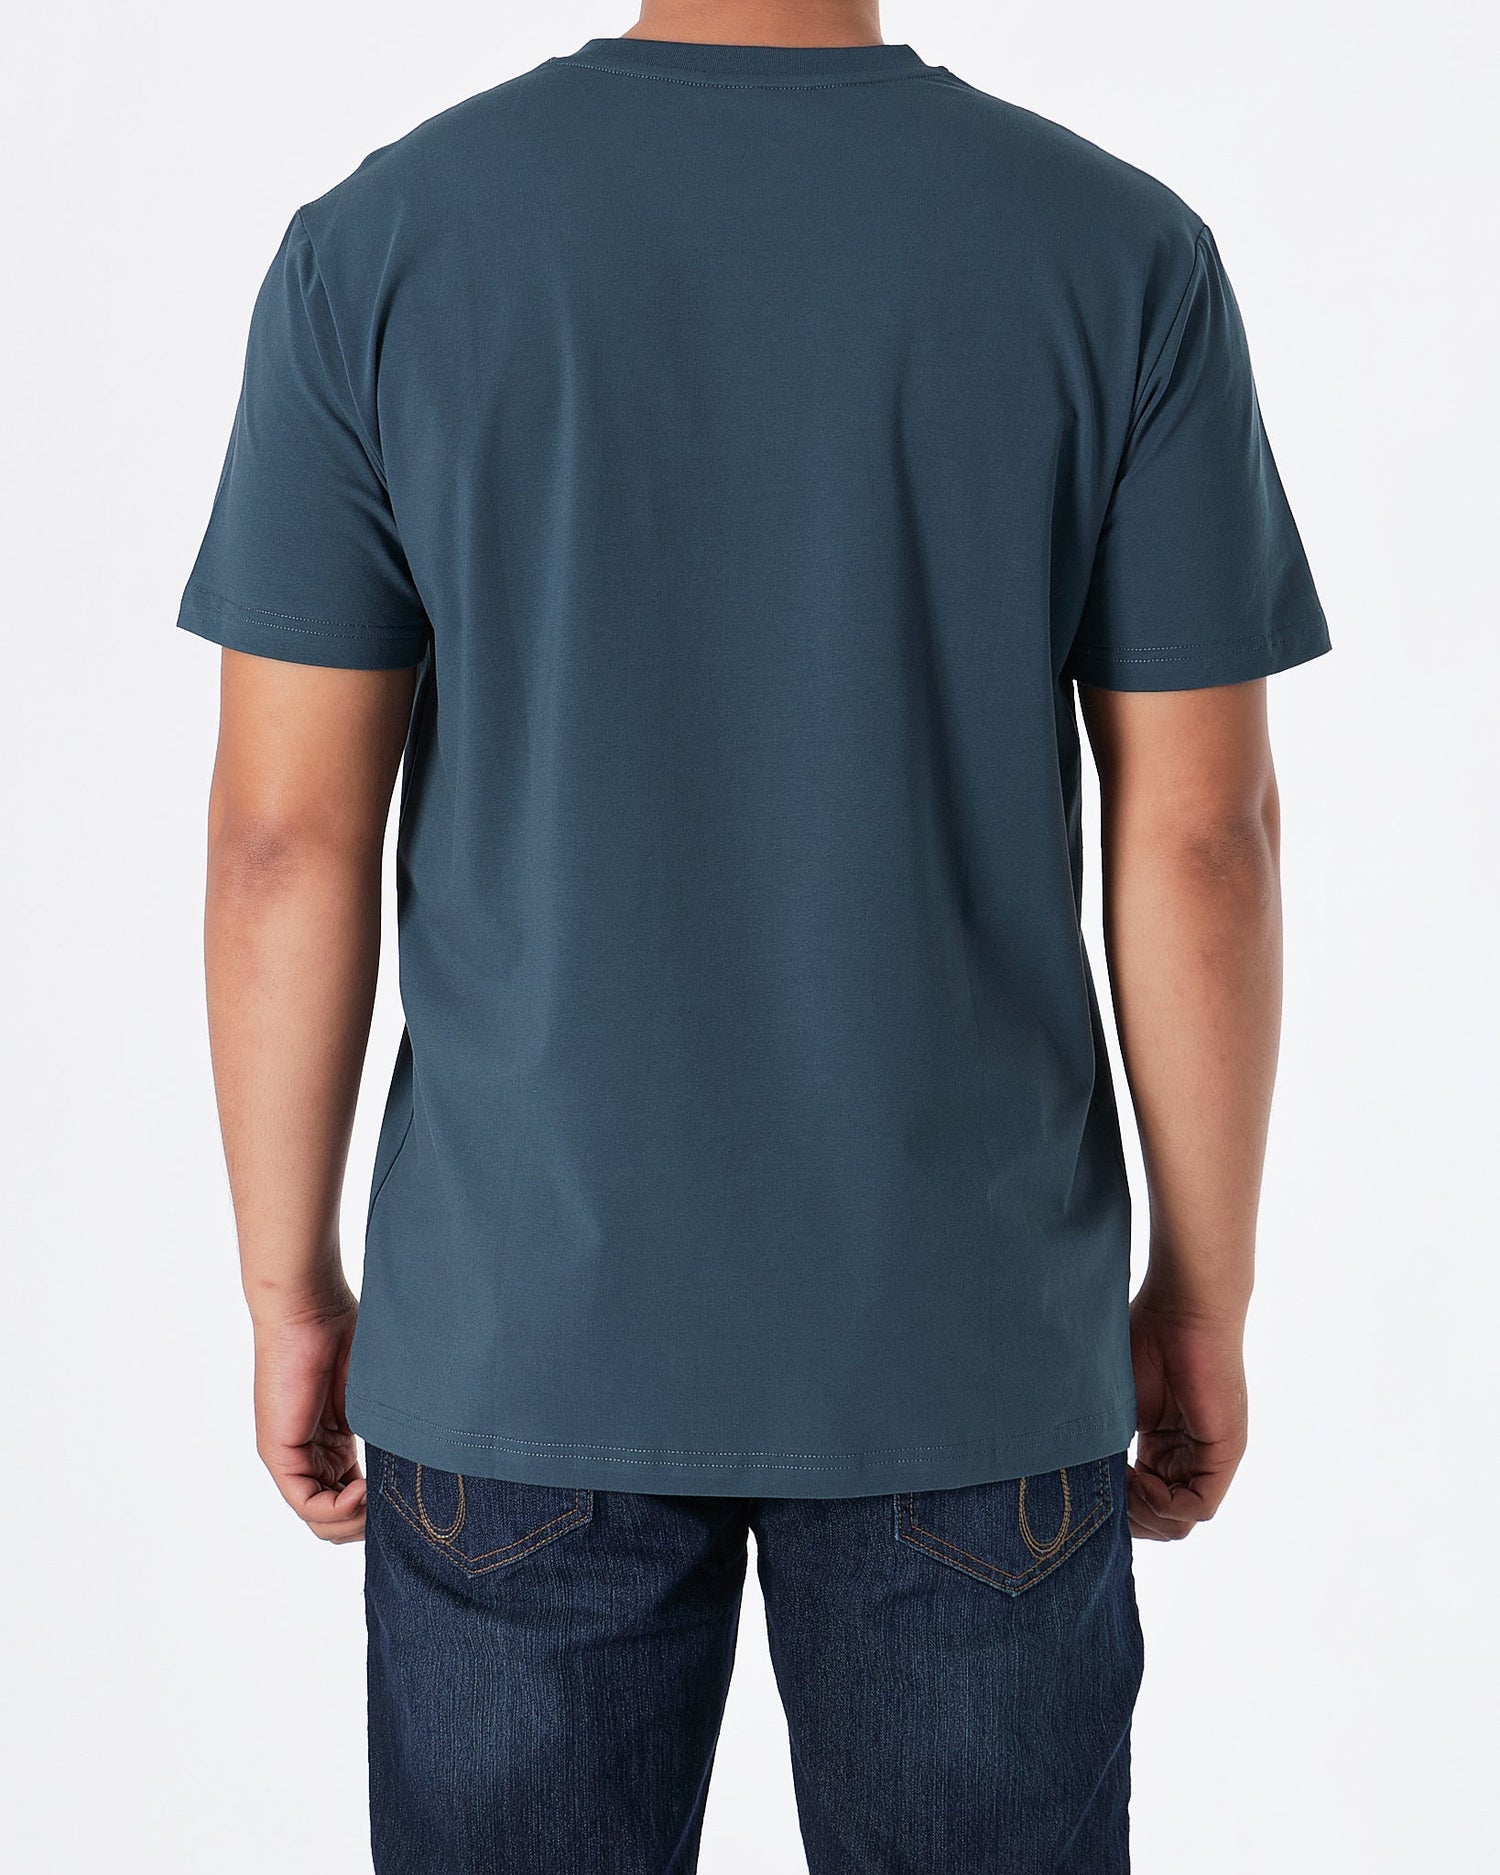 MOI OUTFIT-LAC Plain Men Blue T-Shirt 15.90